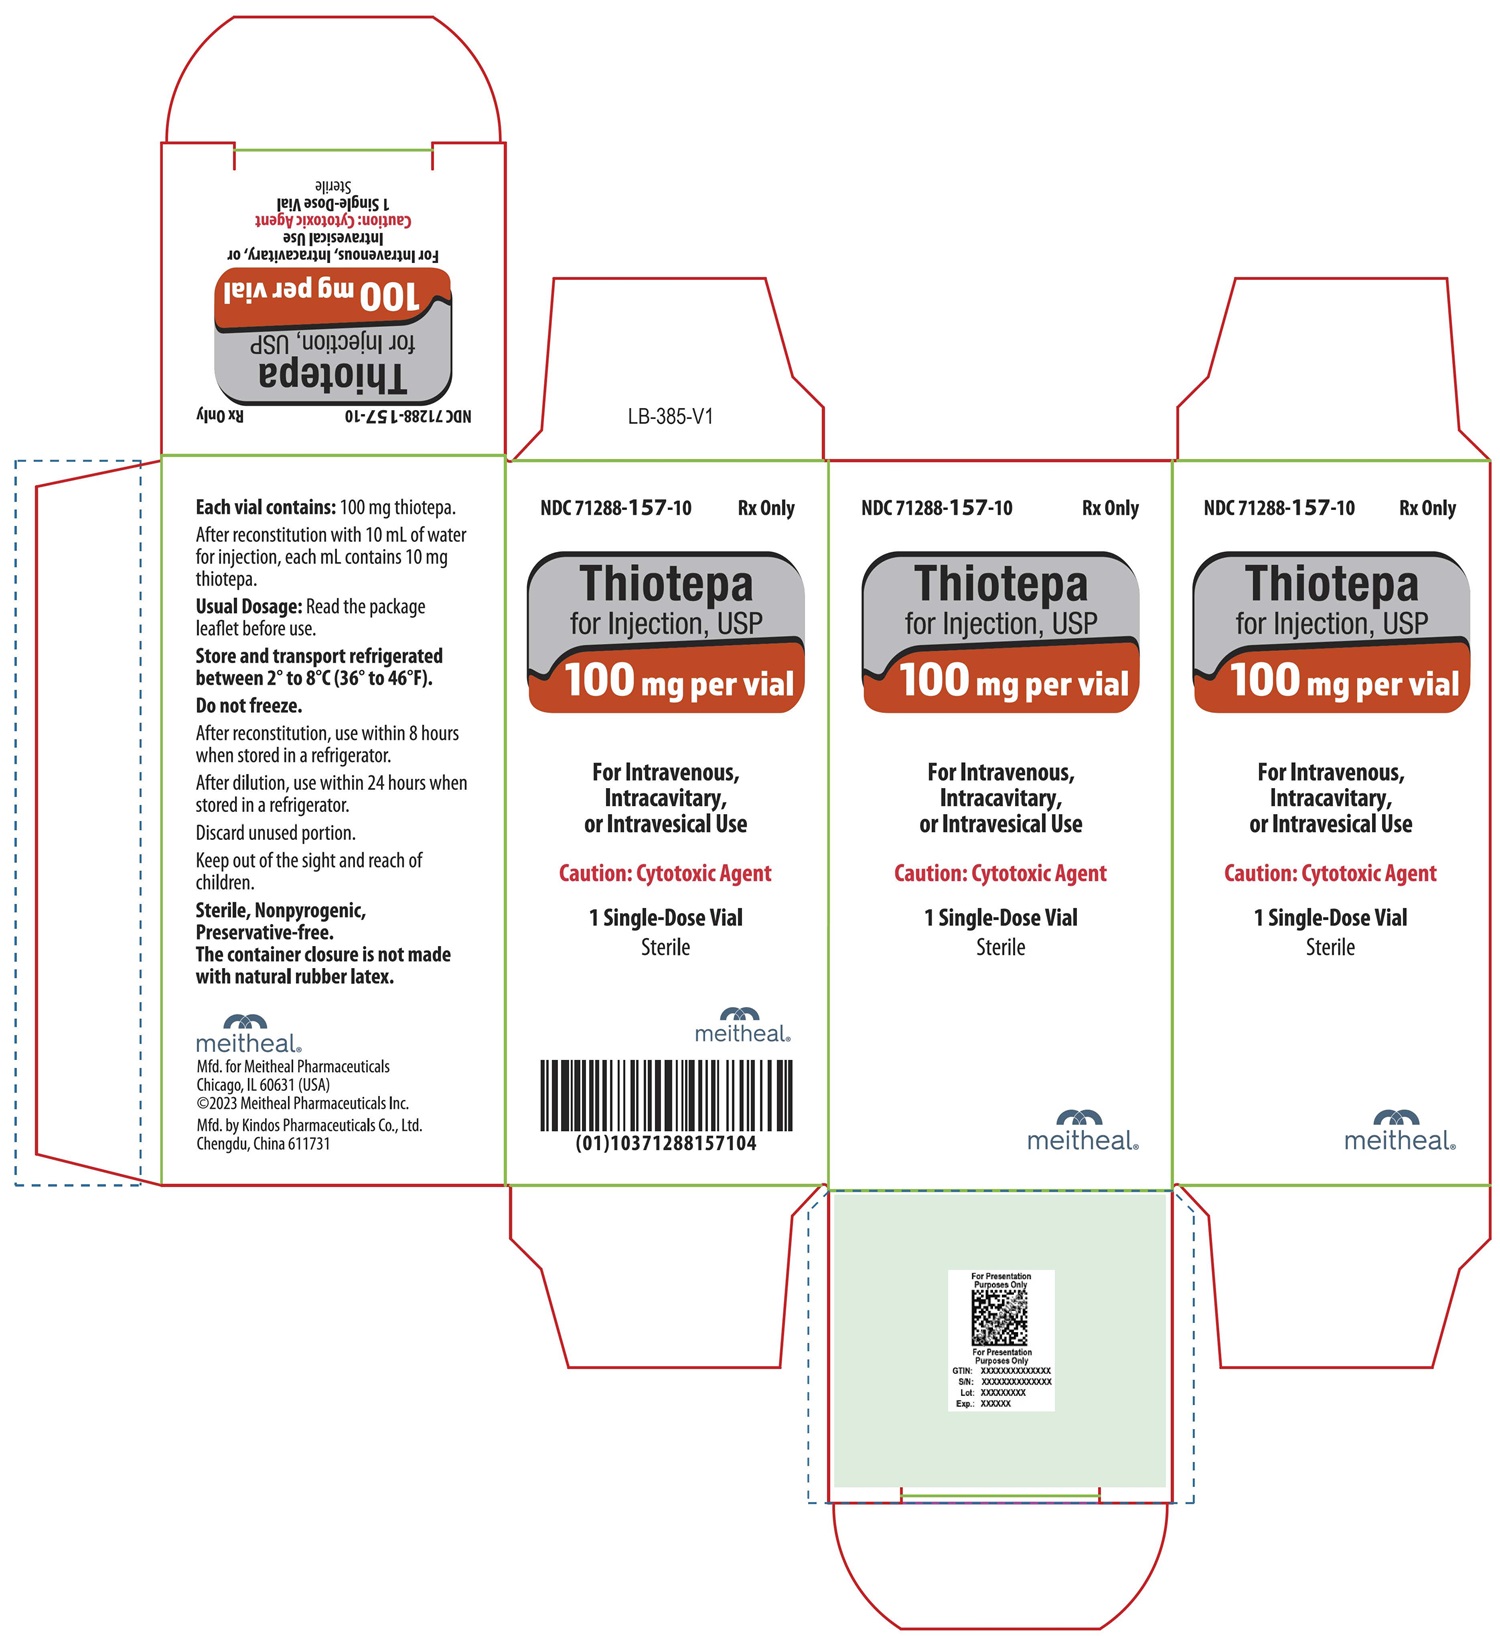 PRINCIPAL DISPLAY PANEL – Thiotepa for Injection, USP 100 mg Carton